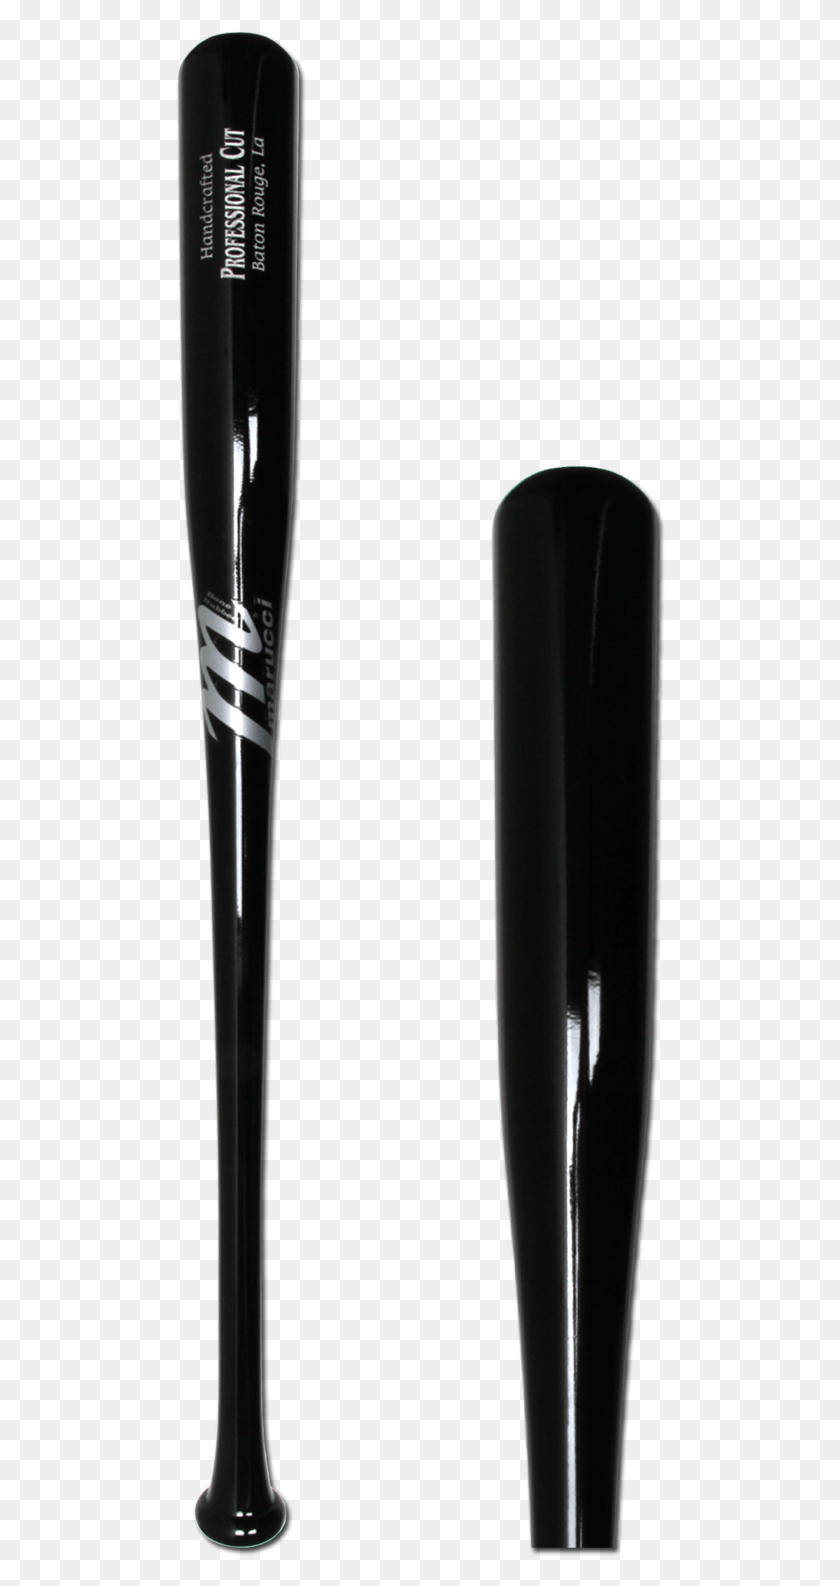 490x1526 Descargar Png Marucci Pro Cut Maple Wood Baseball Bat Bates De Madera Mizuno, Team Sport, Sport, Team Hd Png